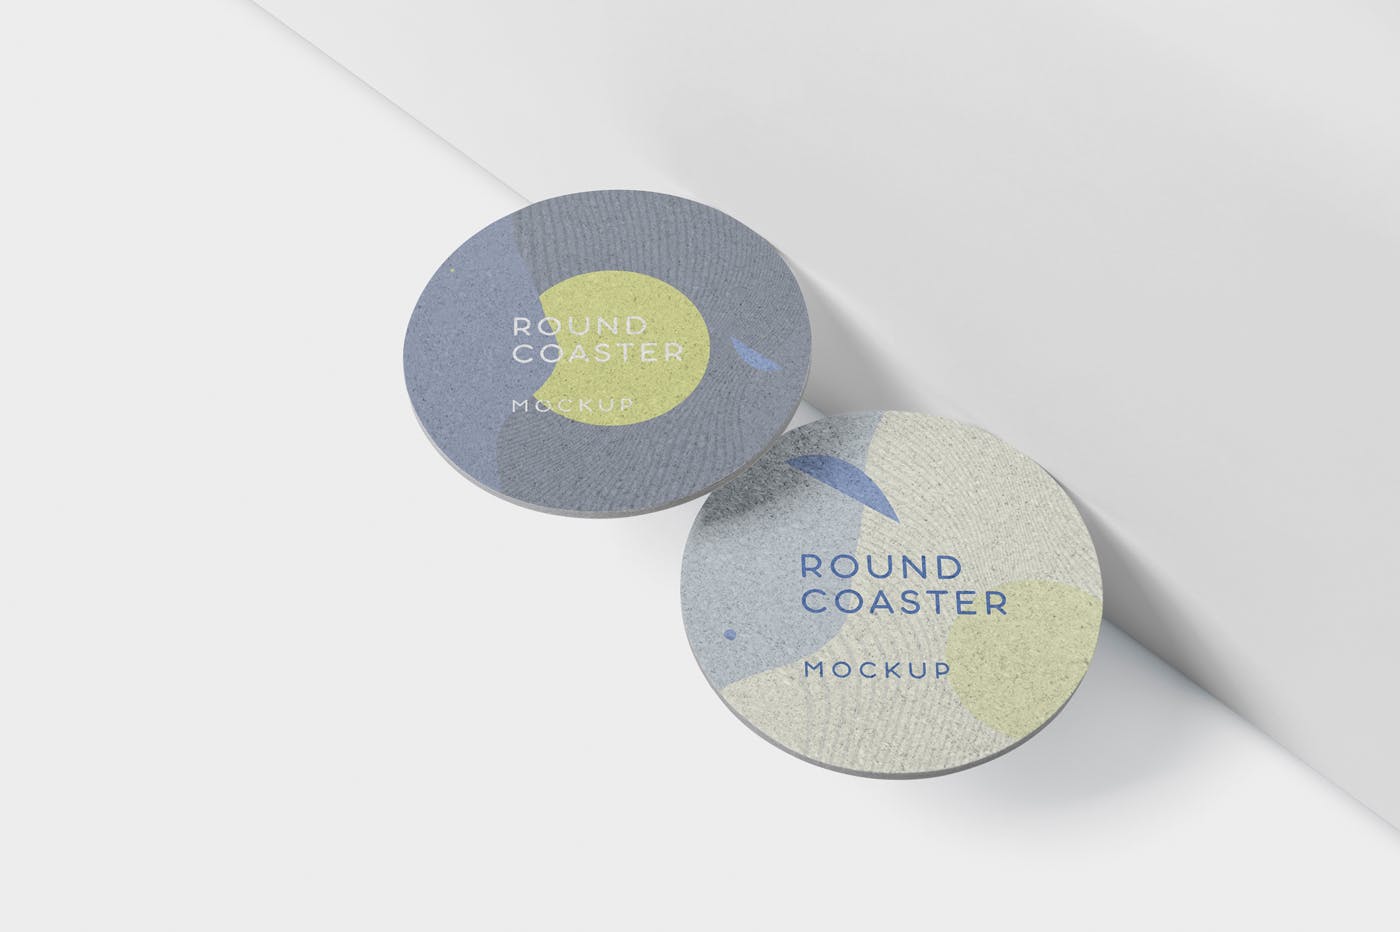 圆形杯垫图案设计效果图16设计网精选 Round Coaster Mock-Up – Medium Size插图(4)